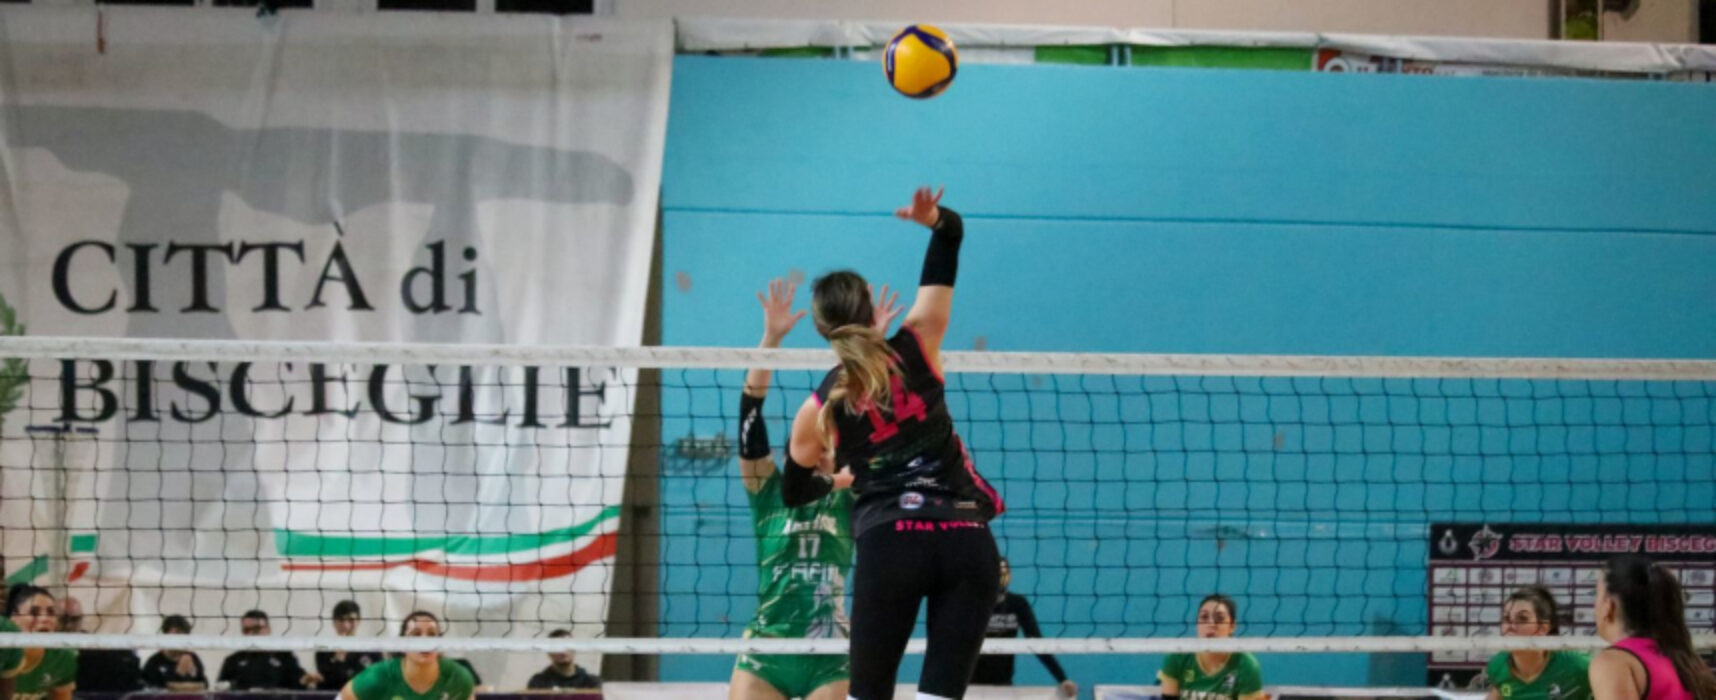 Star Volley inarrestabile, vittoria netta anche a Cerignola / CLASSIFICA